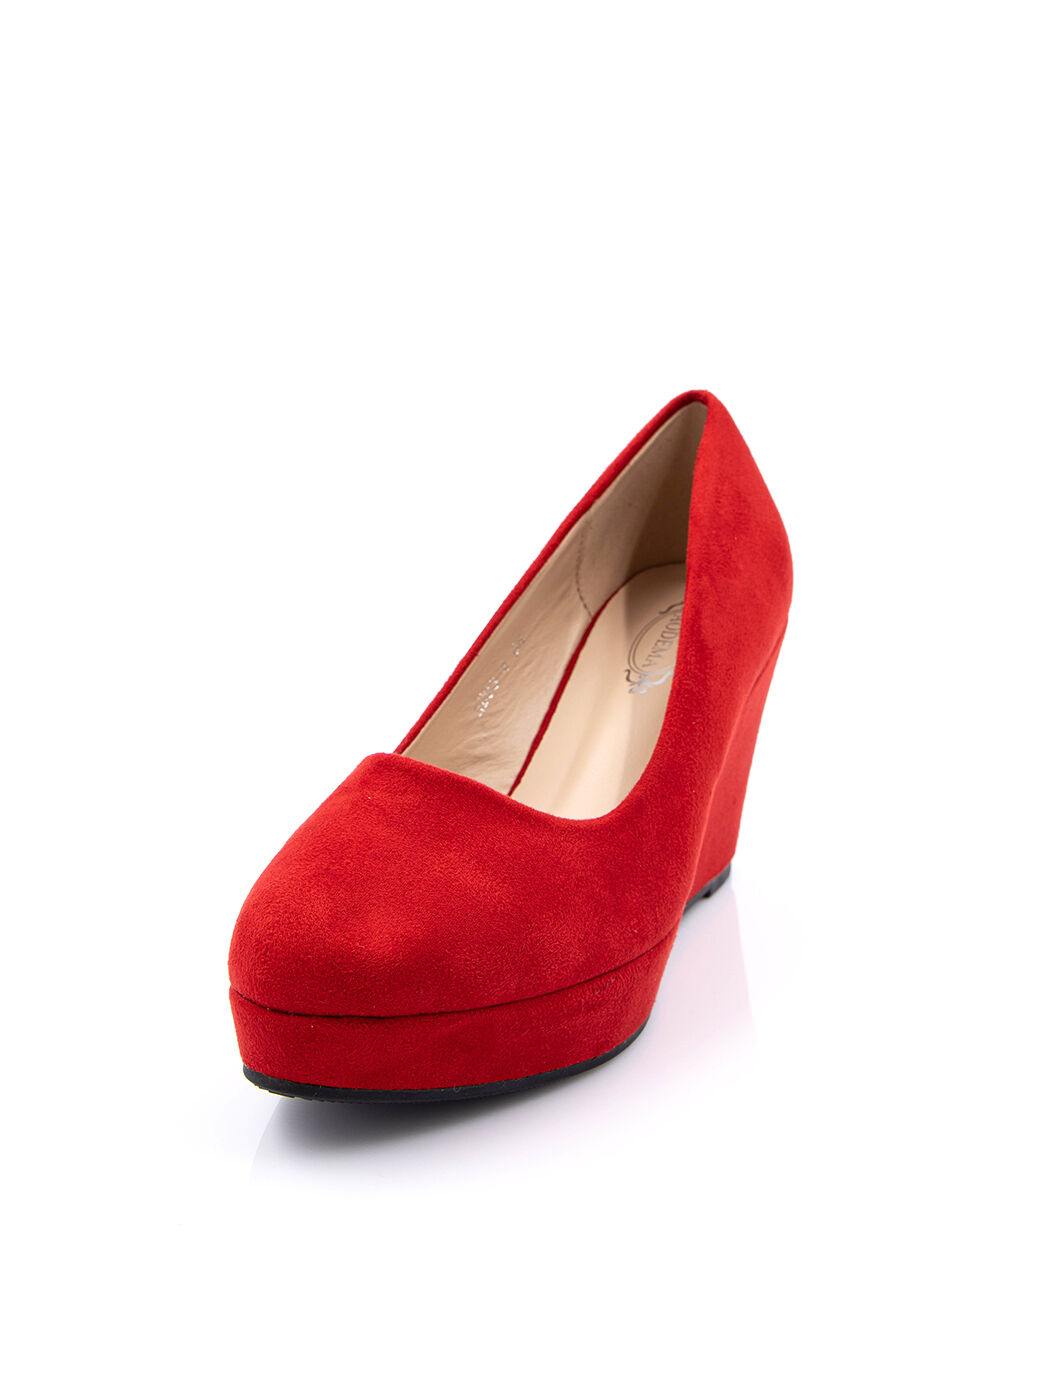 Туфли женские красные экозамша каблук устойчивый демисезон от производителя 4M вид 0